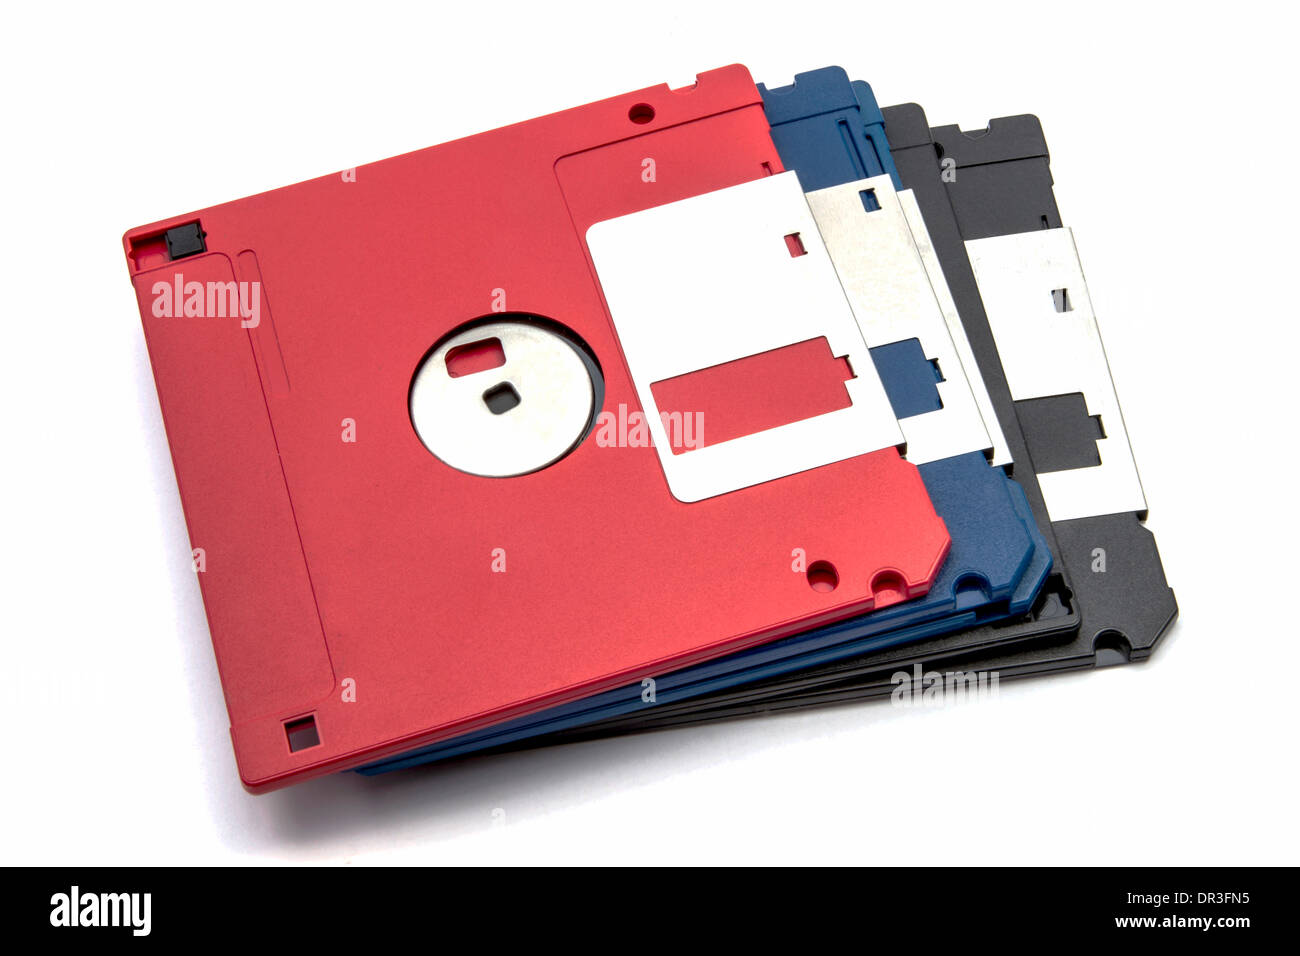 Computer floppy disk closeup on white Stock Photo